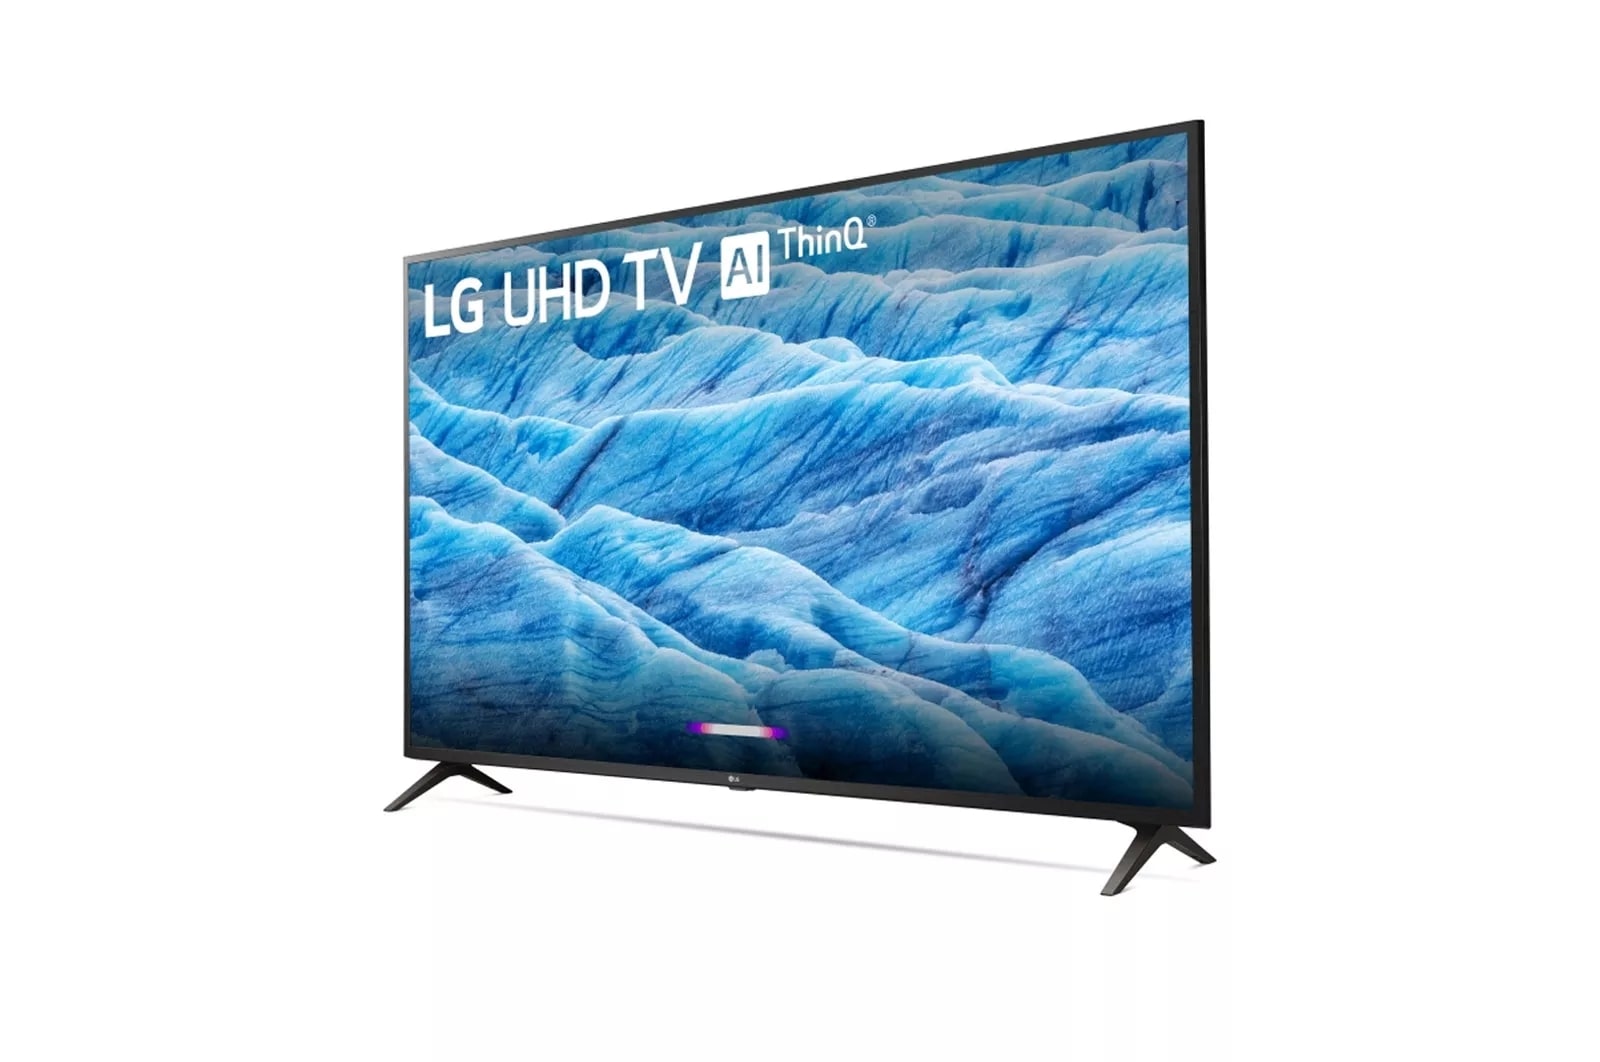 LG 50UM7300PUA: 50 Inch Class 4K HDR Smart LED UHD TV w 